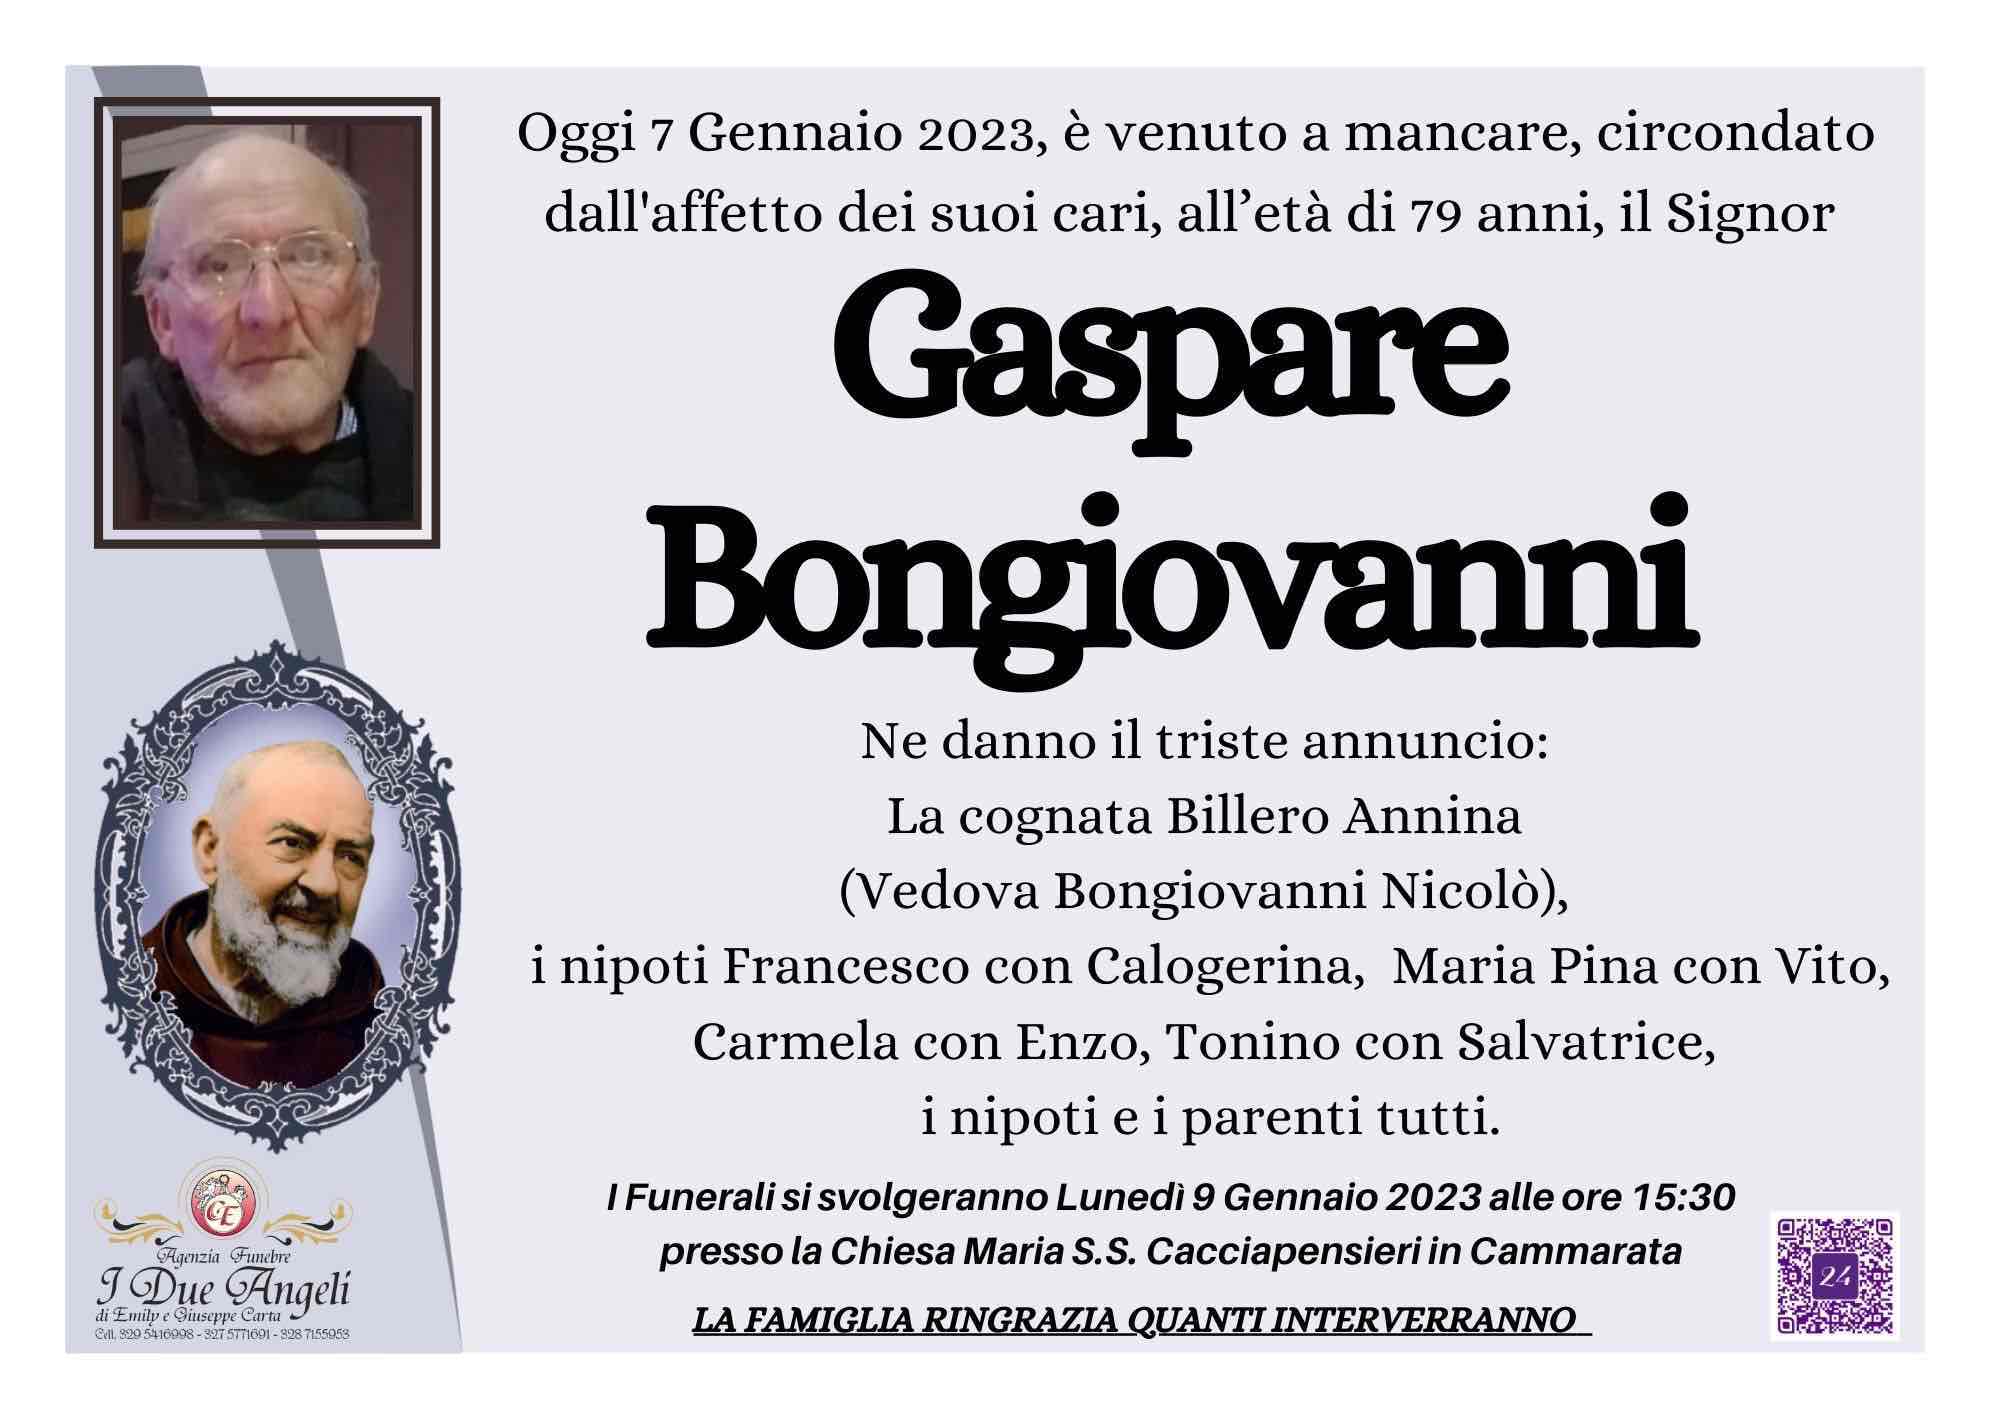 Gaspare Bongiovanni